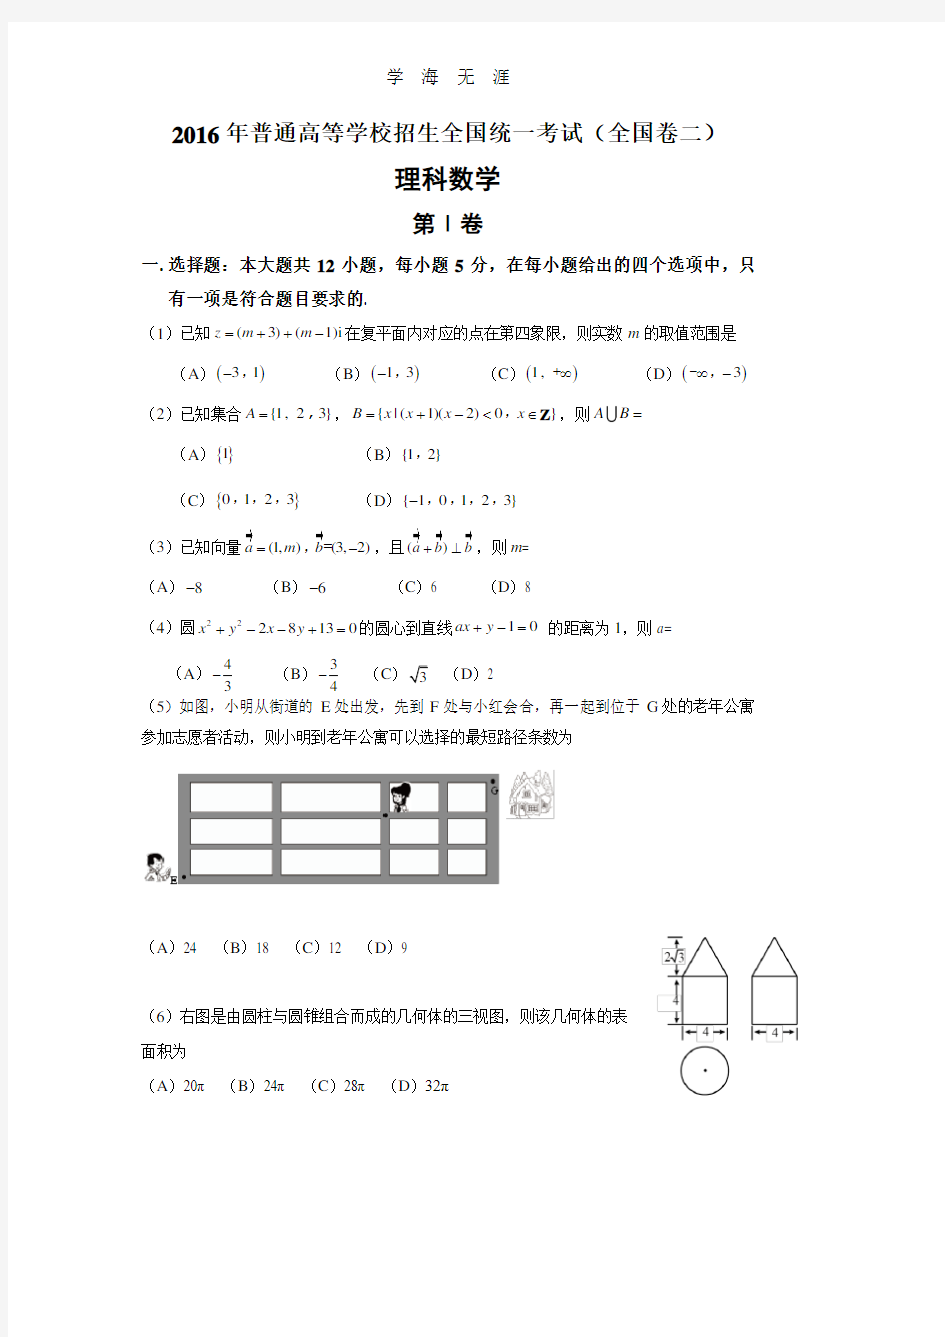 海南高考真题 数学.pdf